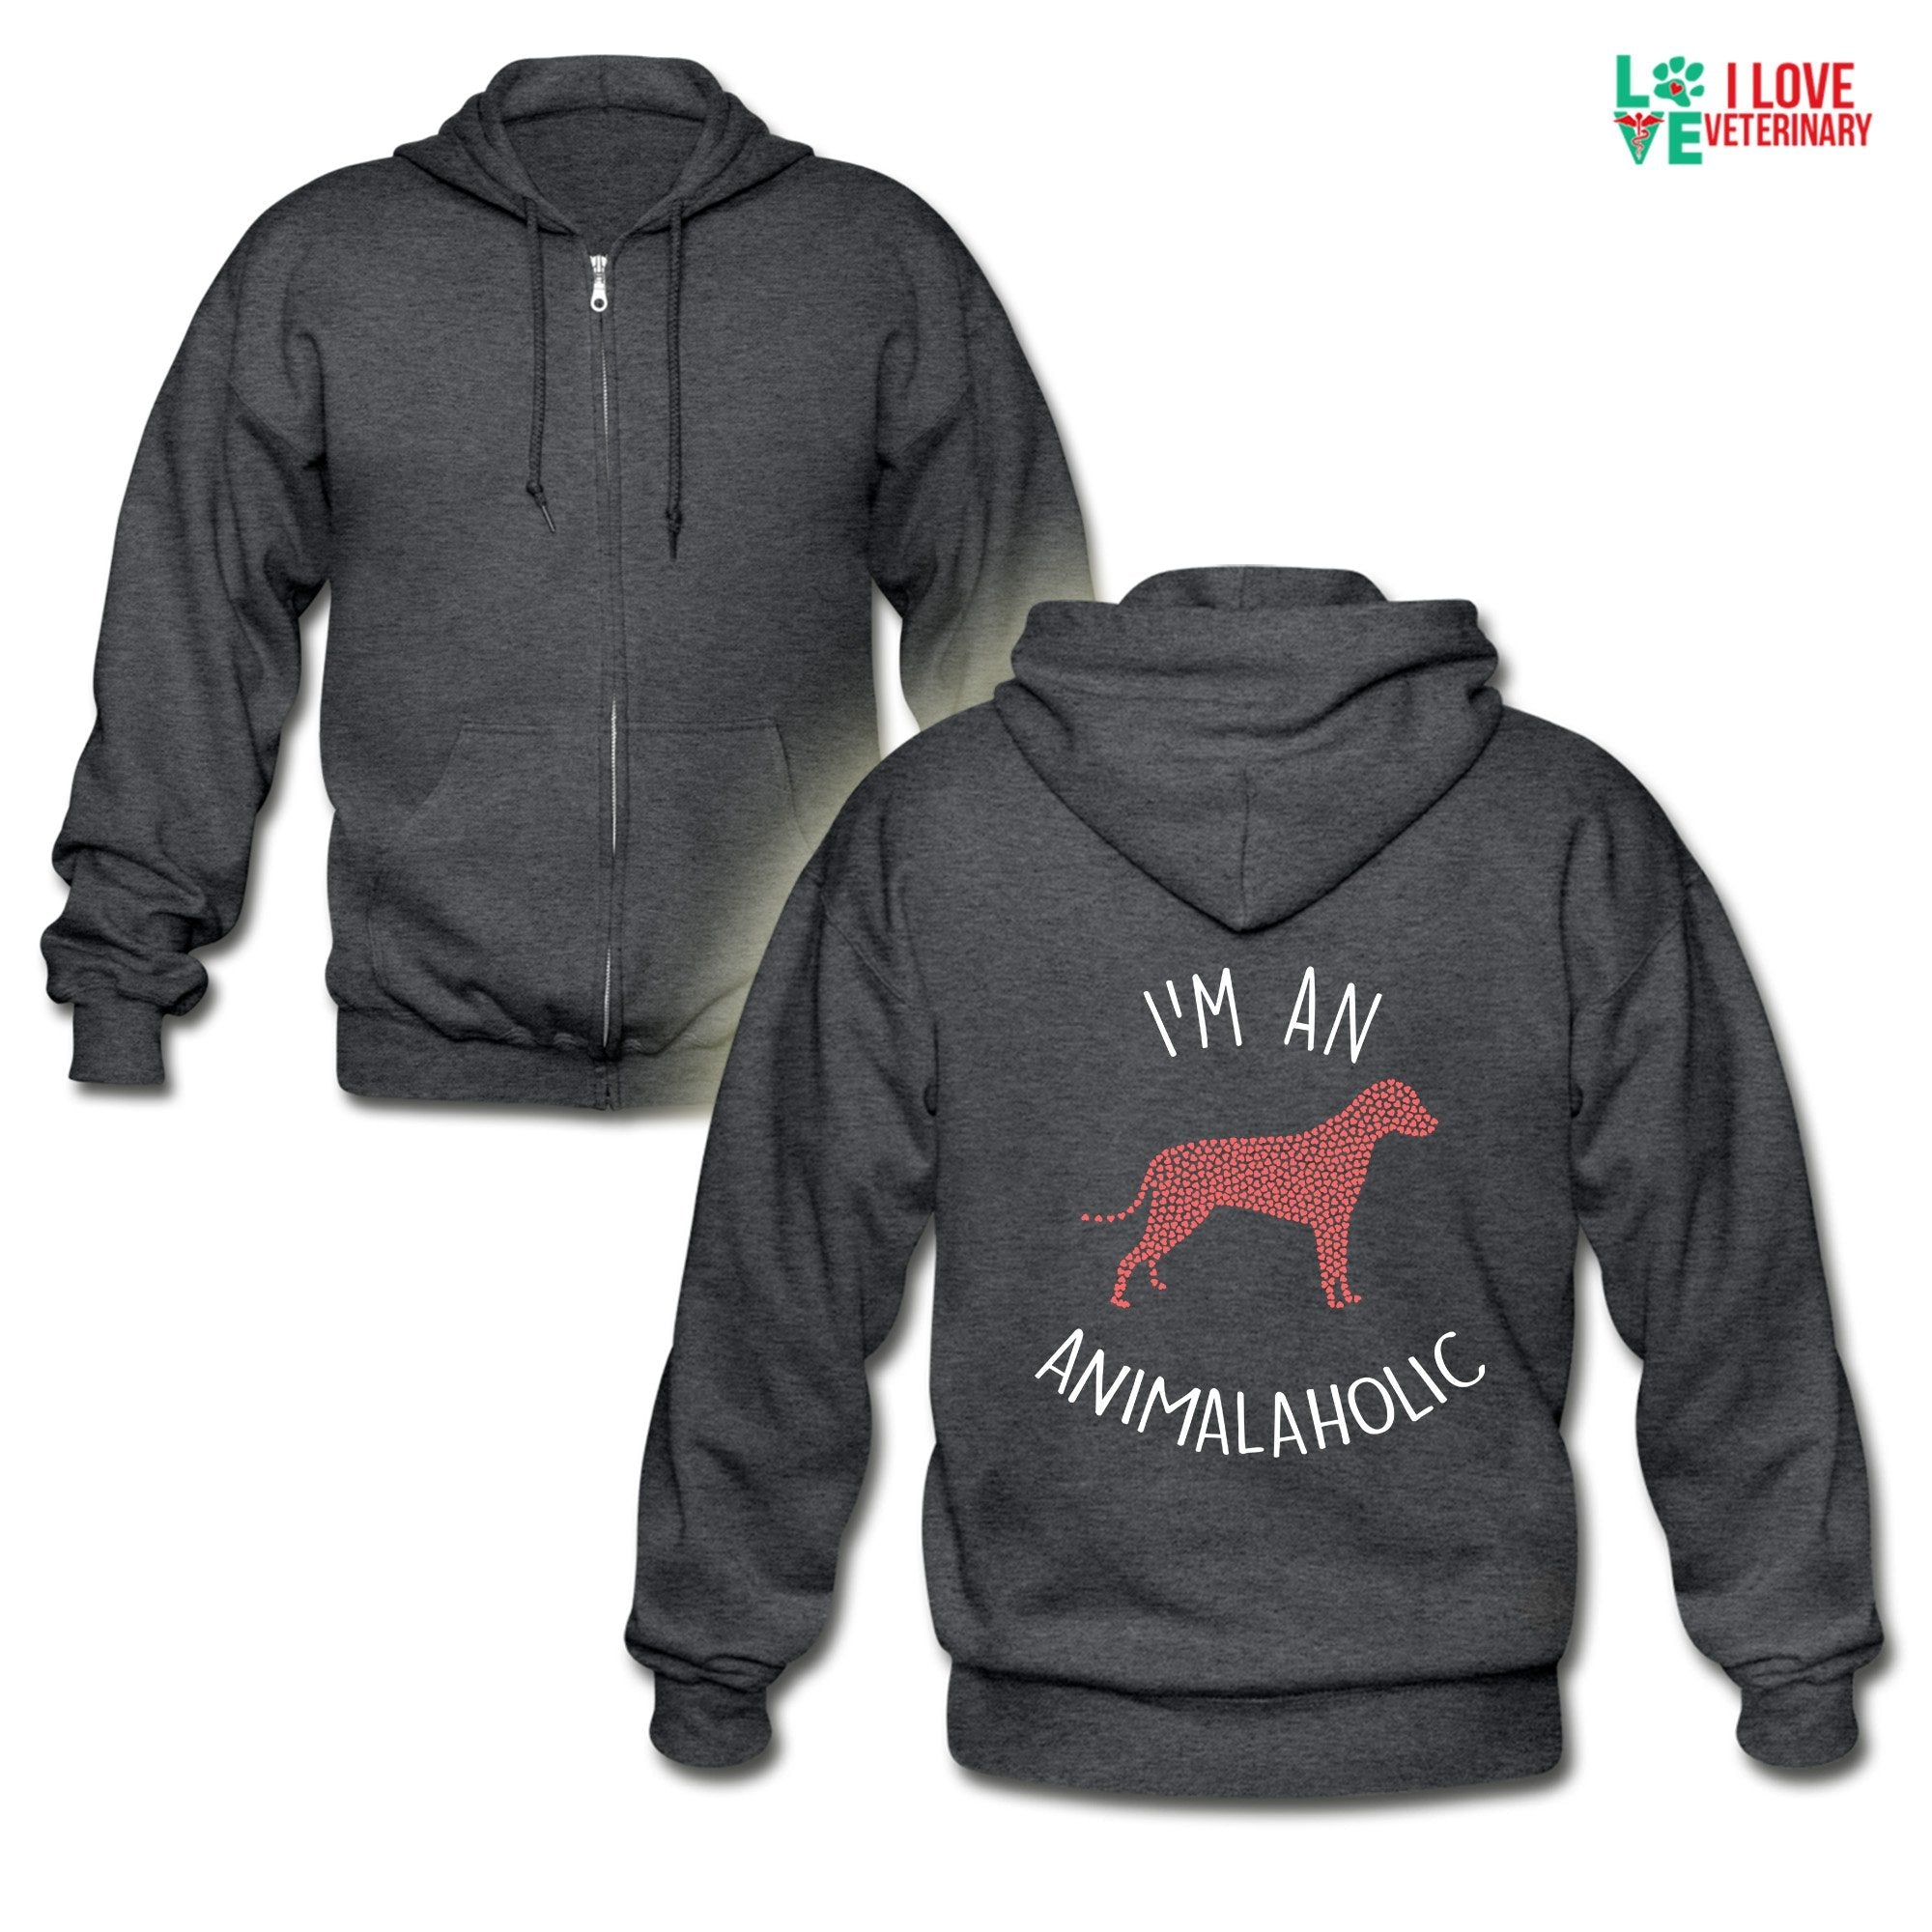 Veterinary - I'm an animalaholic Unisex Zip Hoodie – I love Veterinary